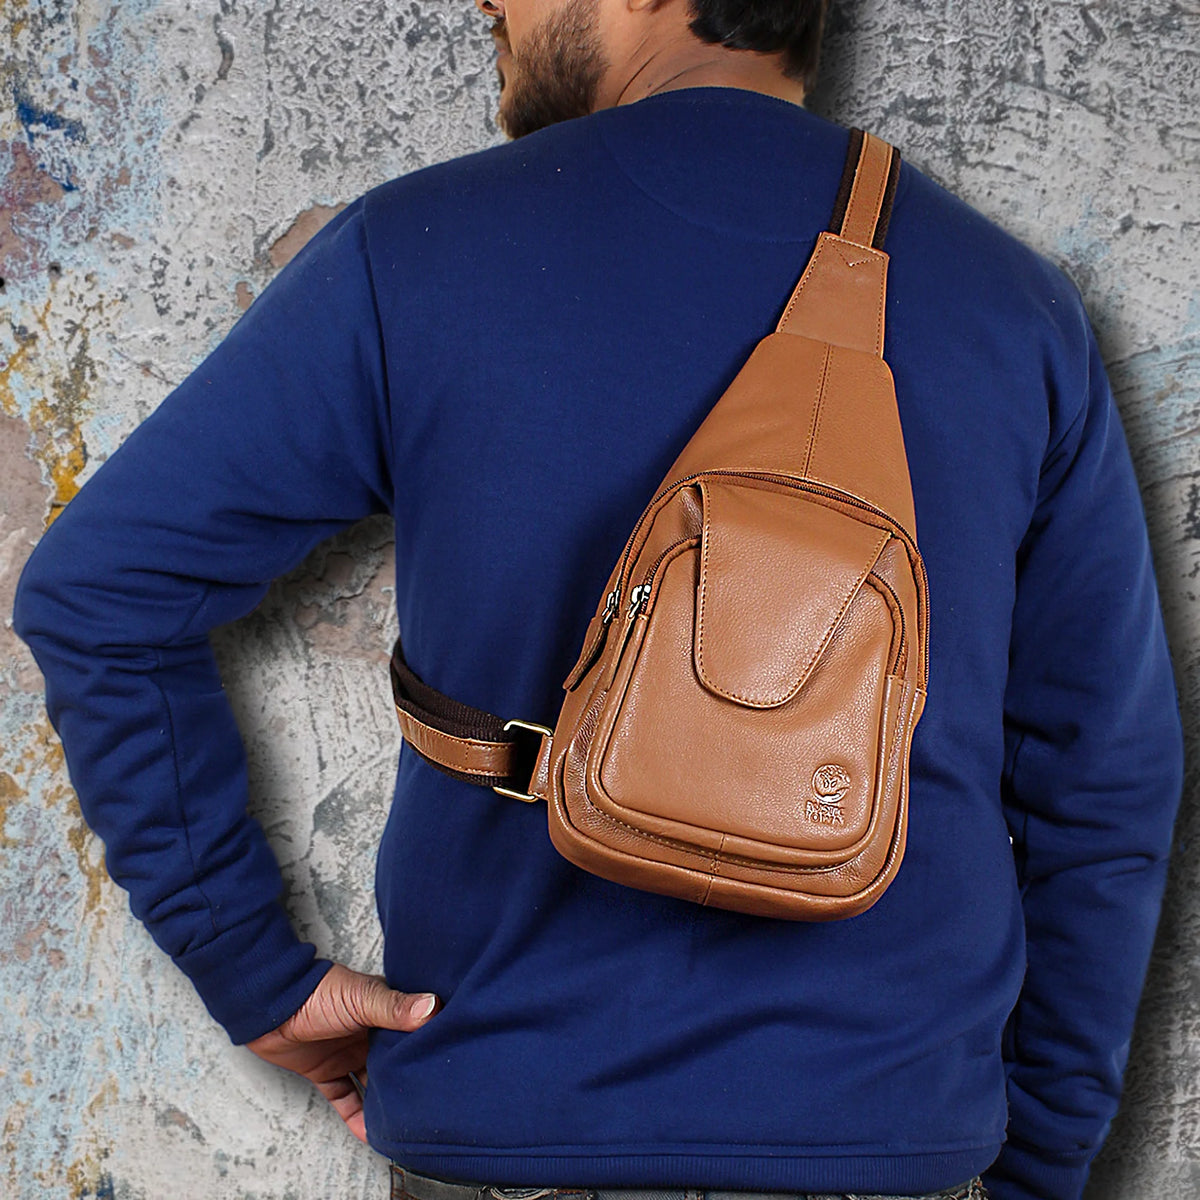 Small Sling Bag Purse Backpack Chest Bag Pack Shoulder Bag for Men  Crossbody Bag